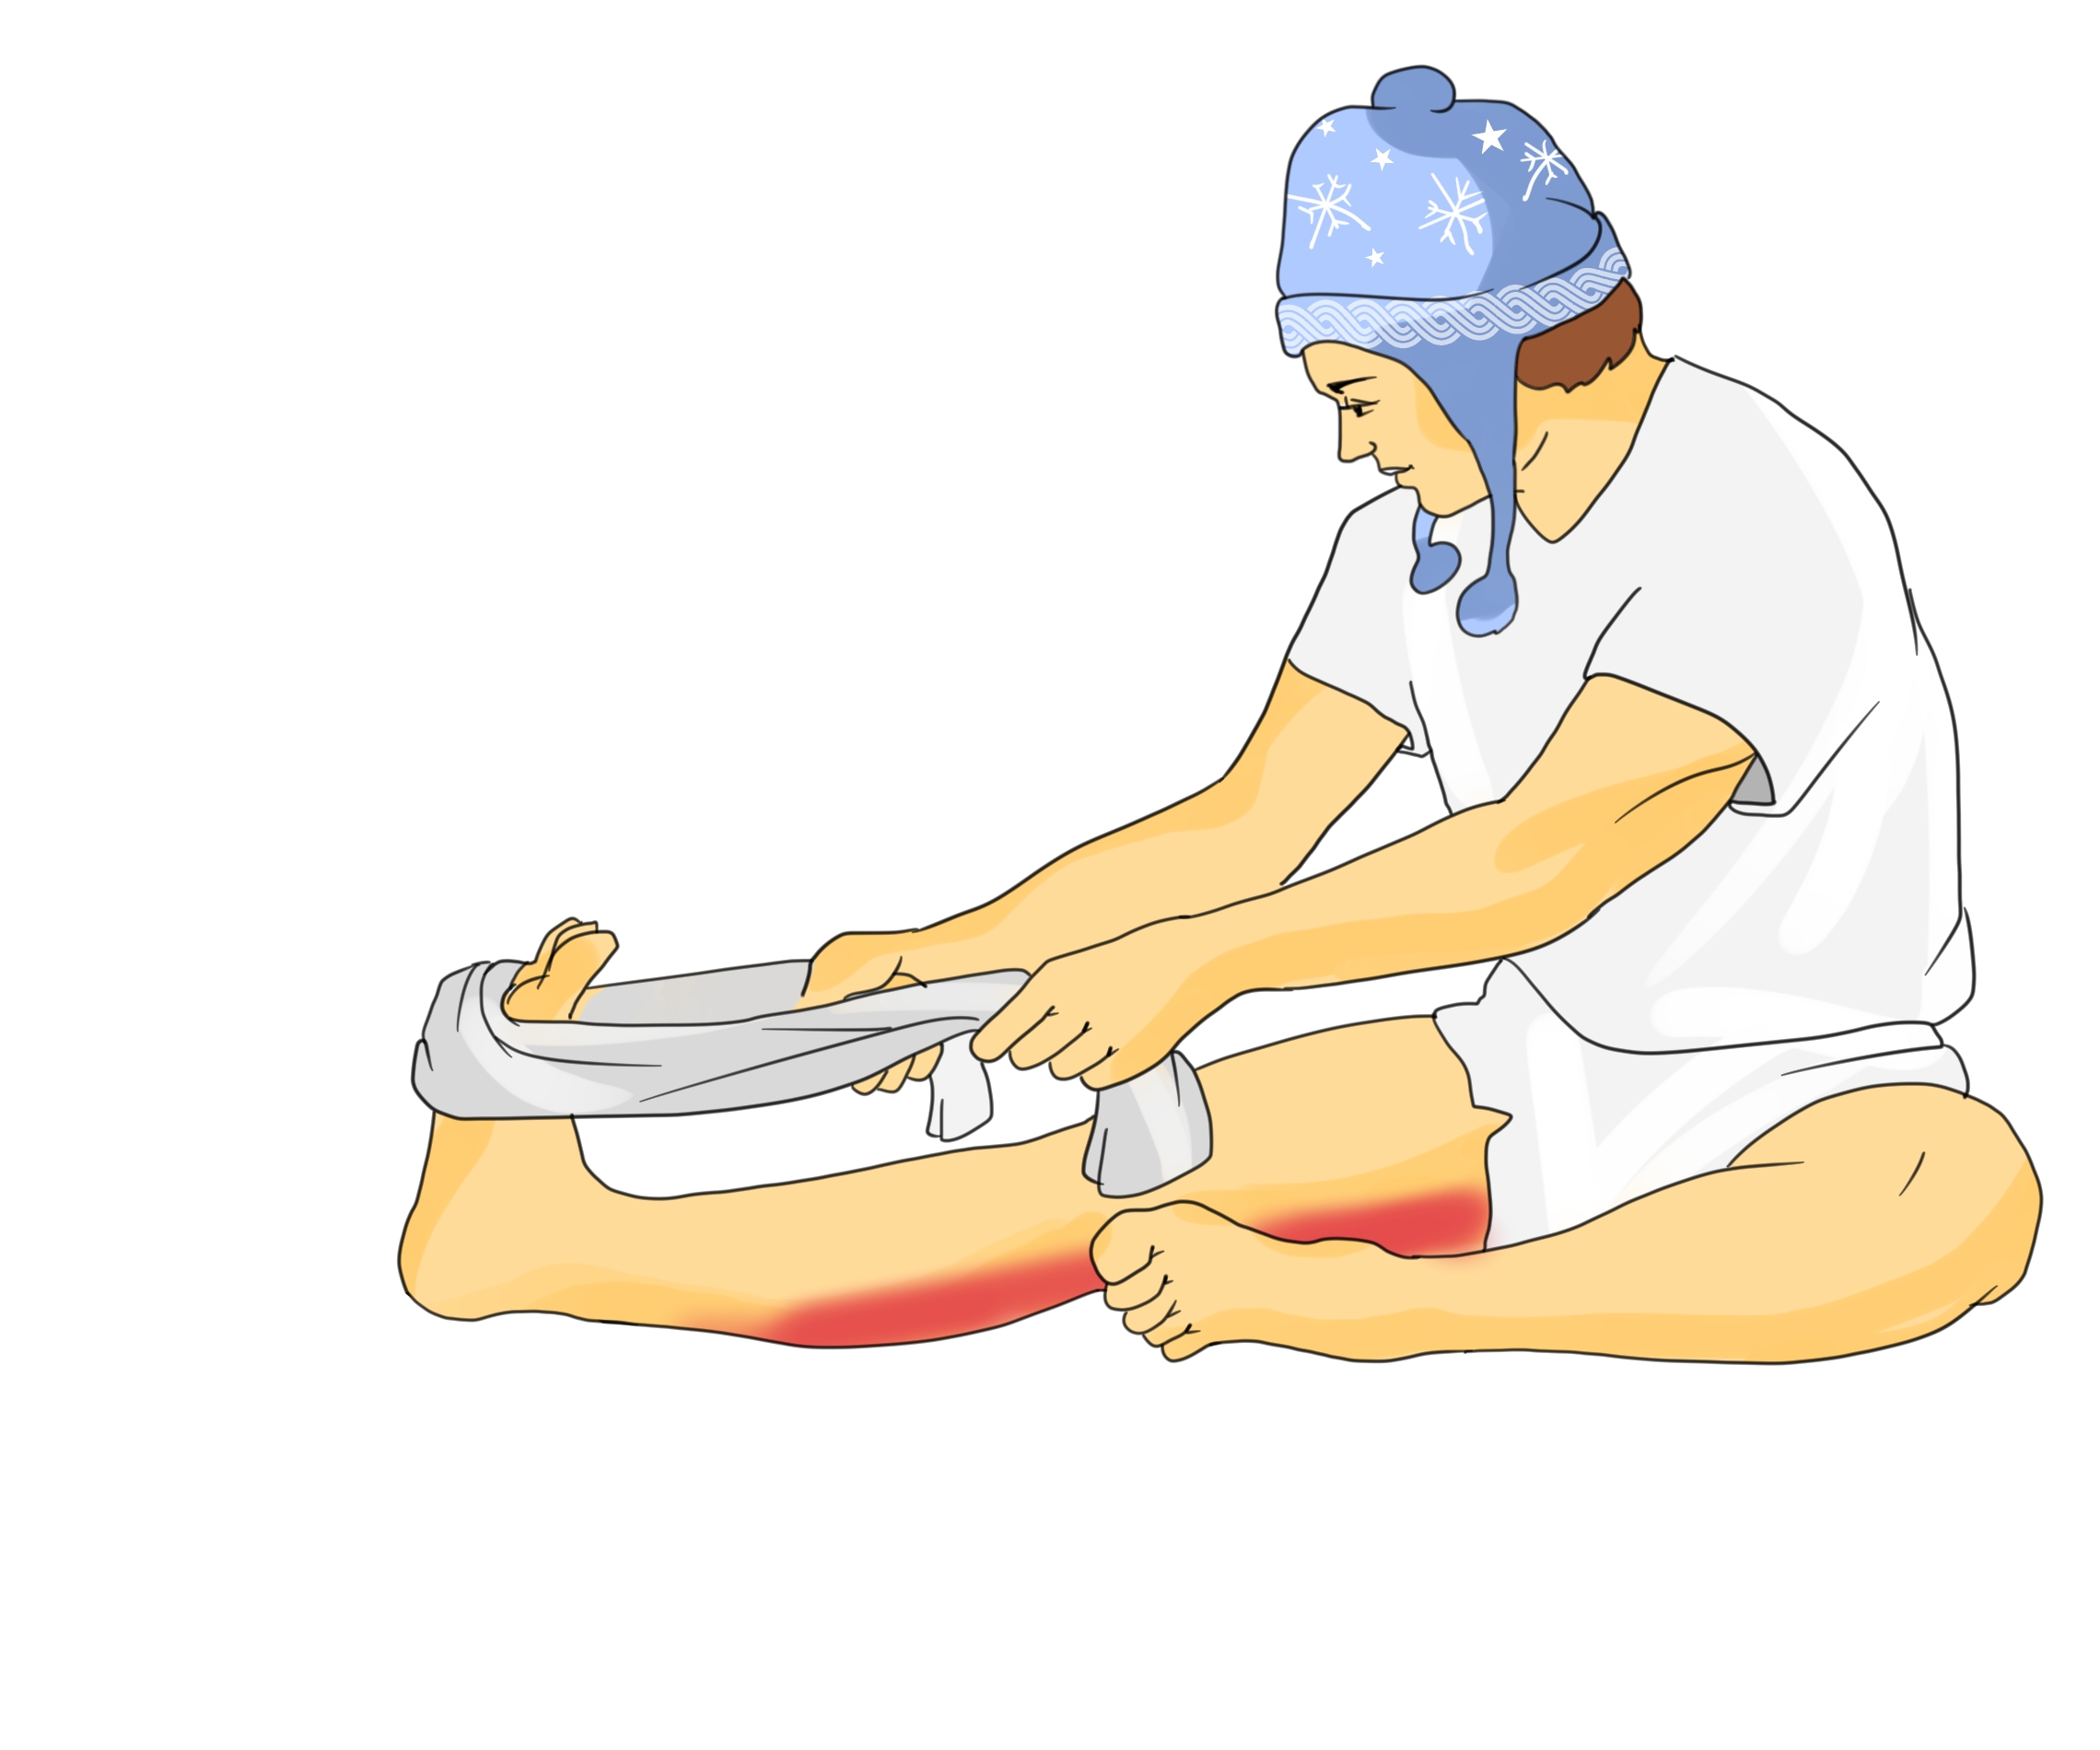 Hamstring cramps when bending knee